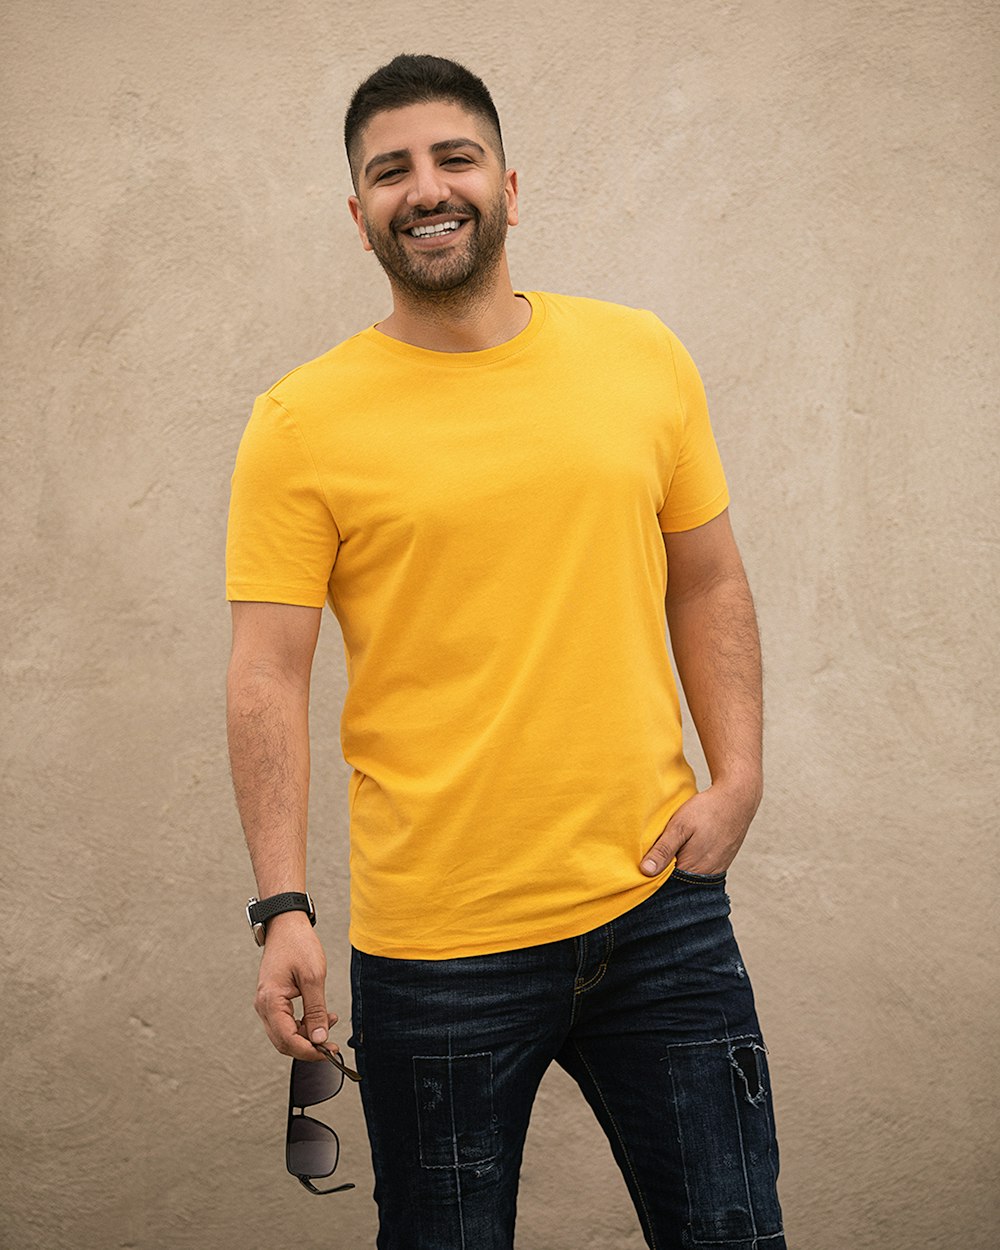 homem em camiseta amarela de pescoço de tripulação e jeans preto de pé ao lado da parede branca